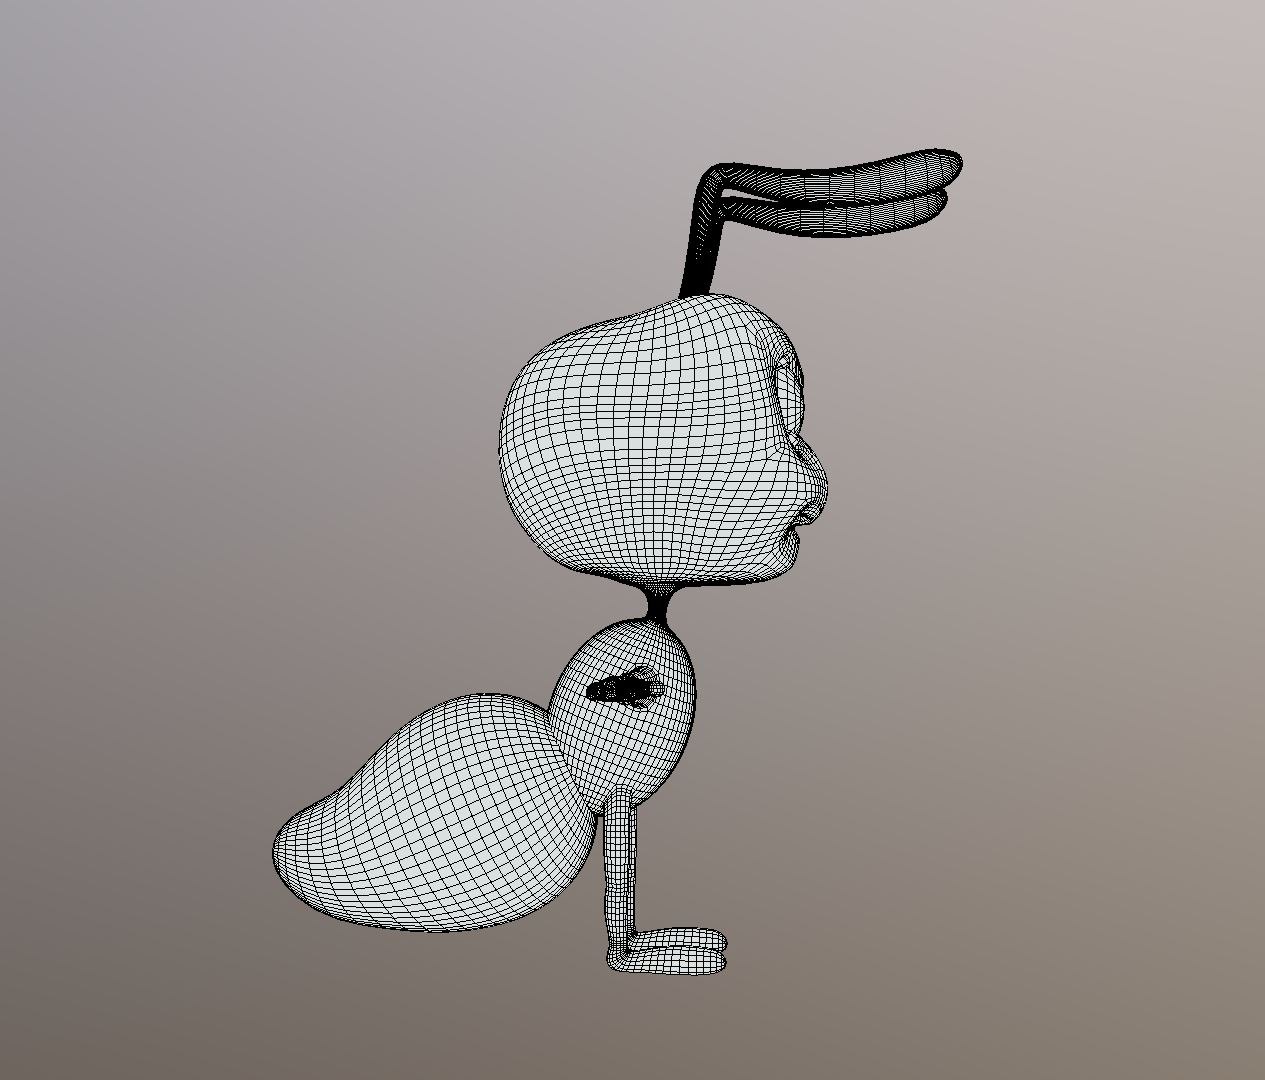 Ant cartoon 3D model - TurboSquid 1427256